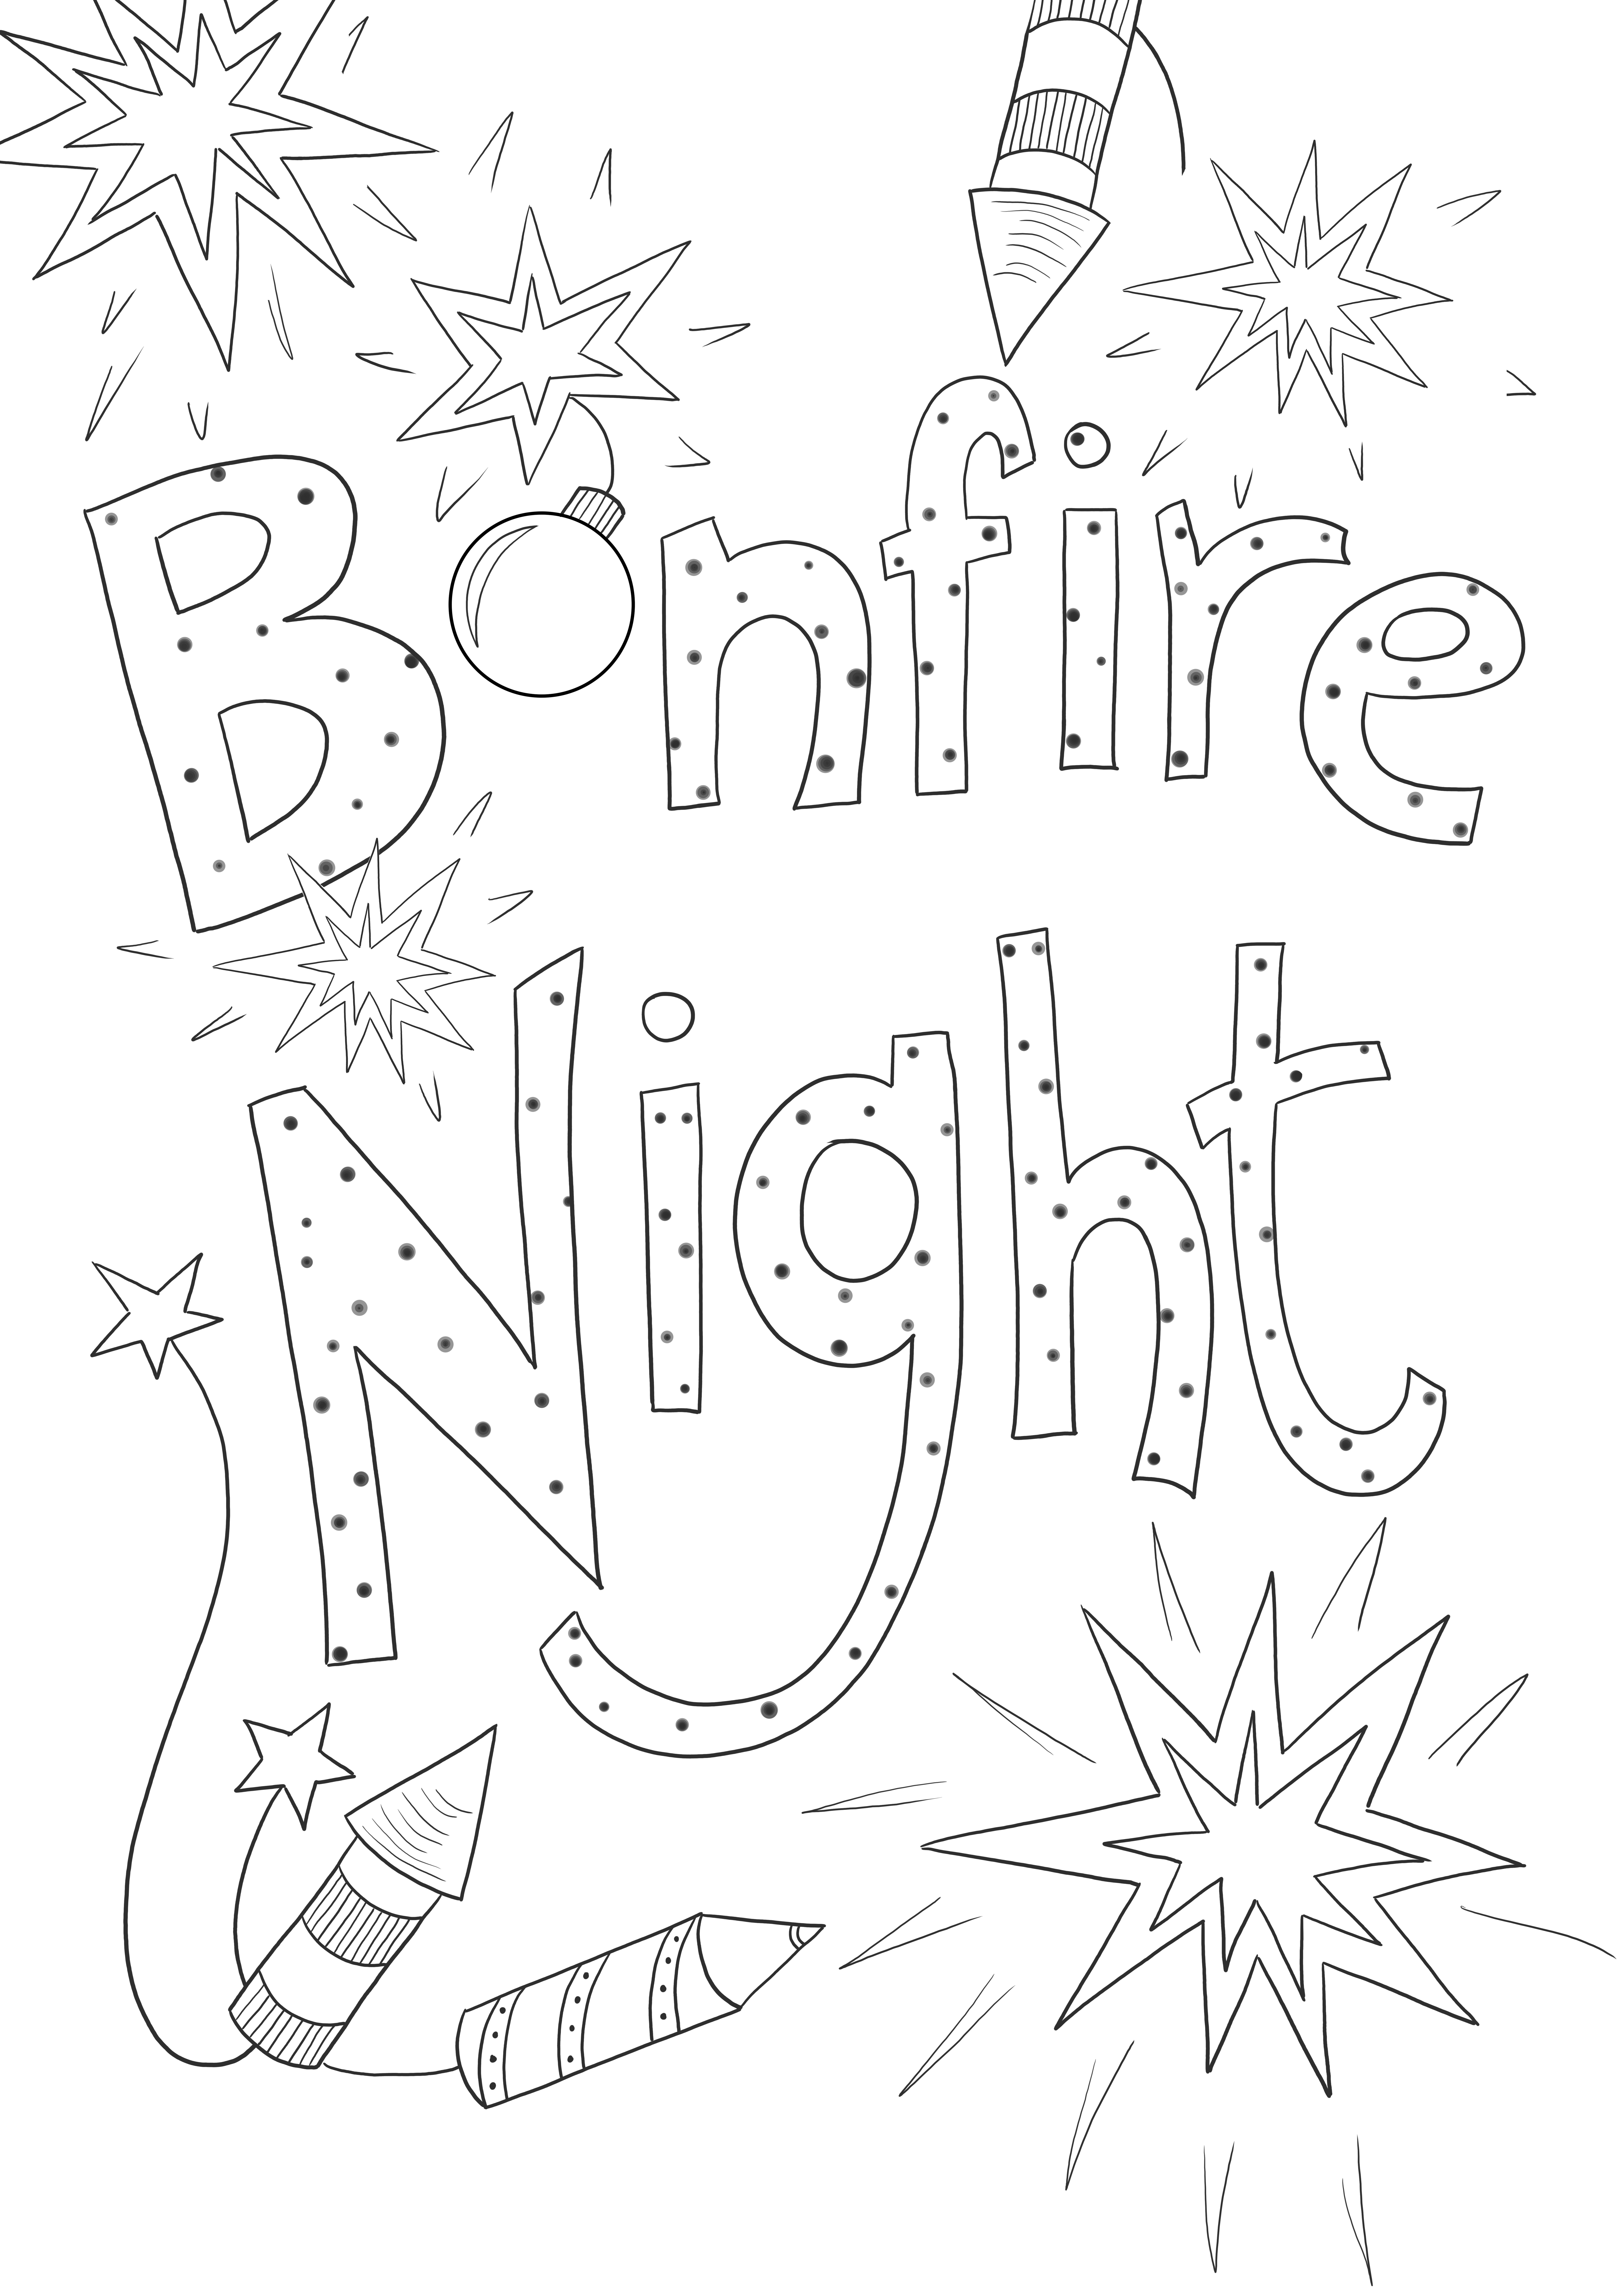 Bonfire night gratuit pour imprimer des images et des couleurs pour les enfants de tous âges